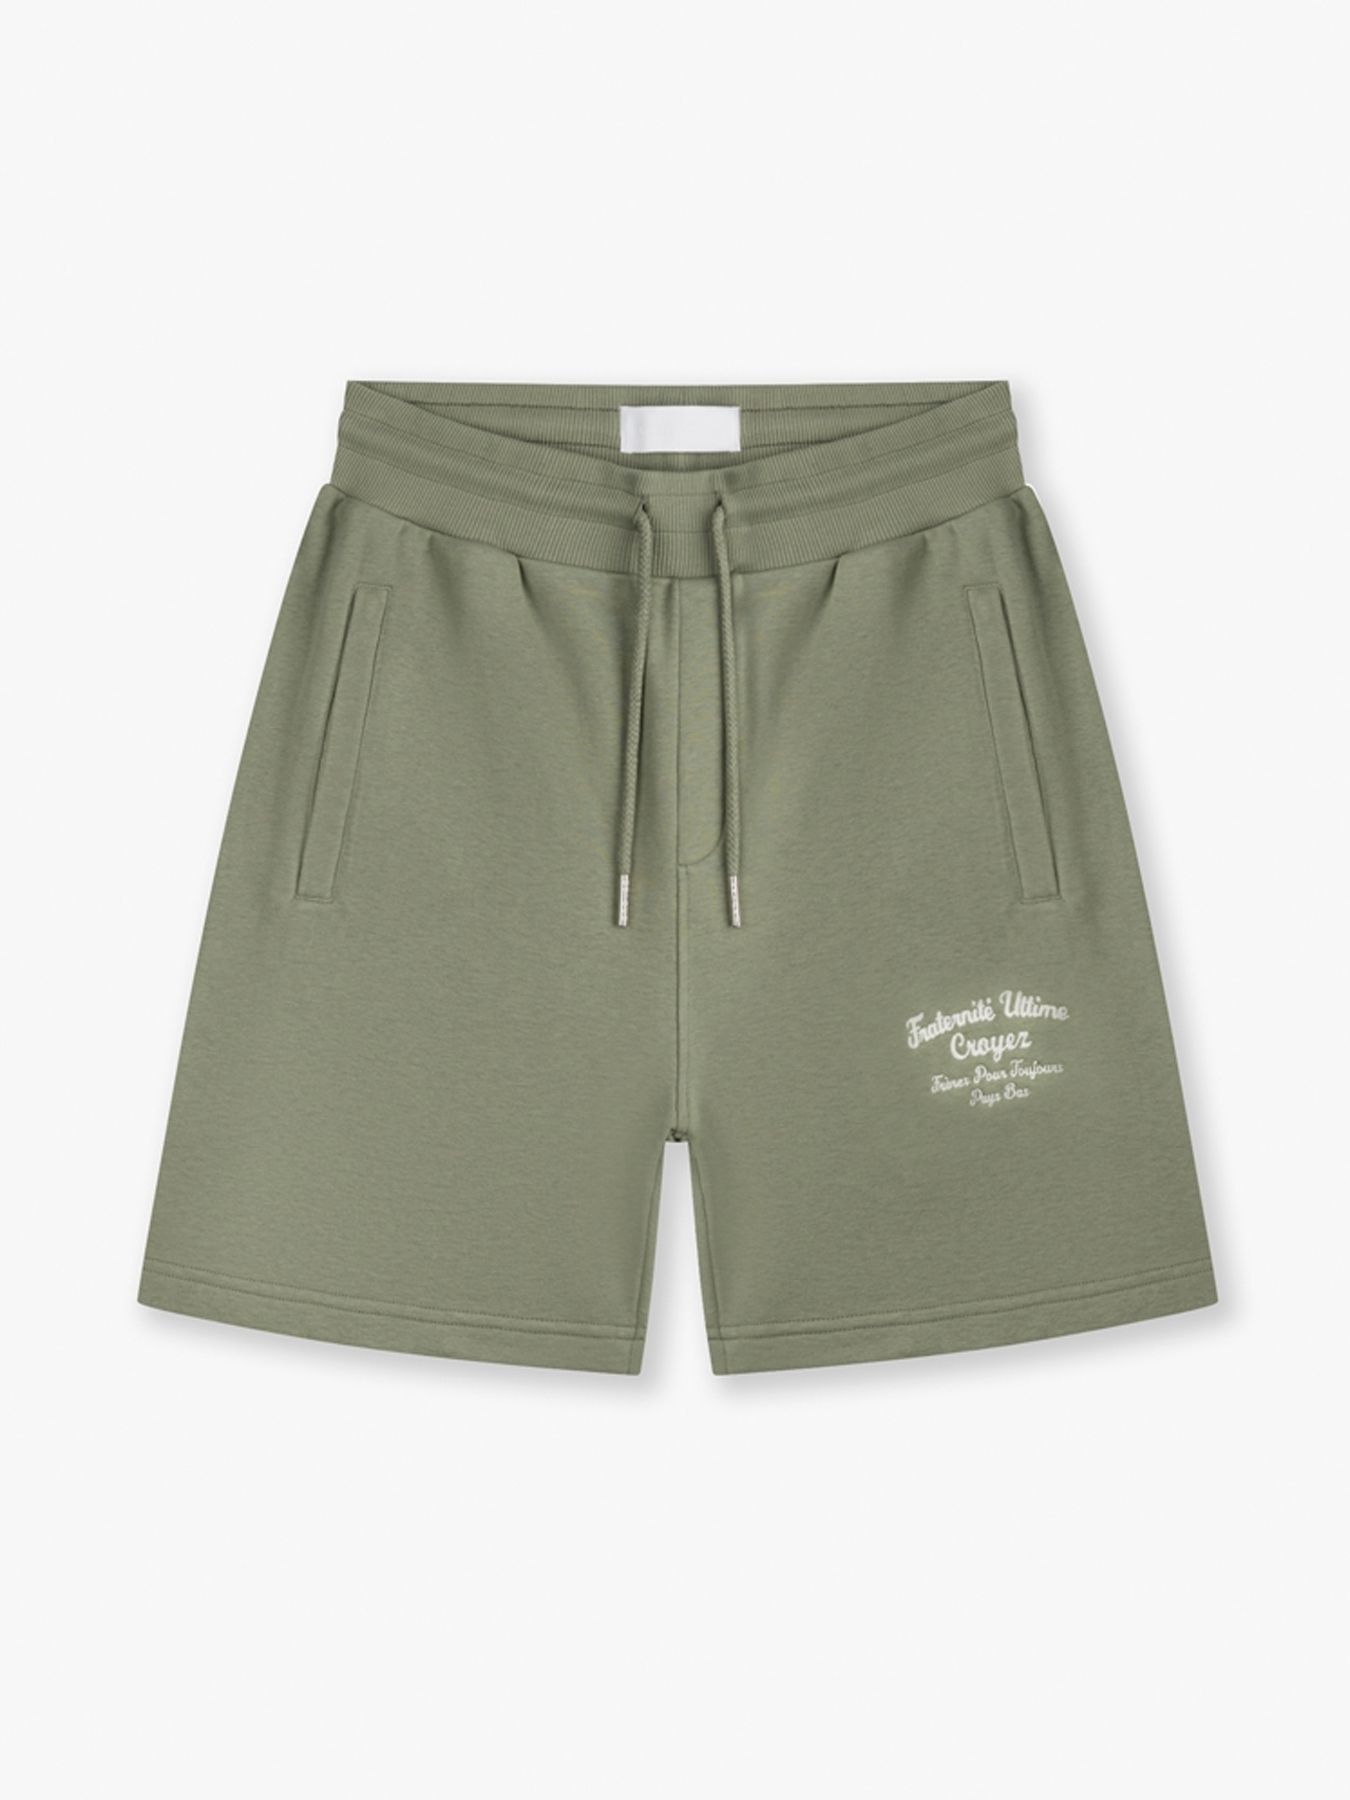 Croyez Fraternite shorts Washed Olive 2900147004047